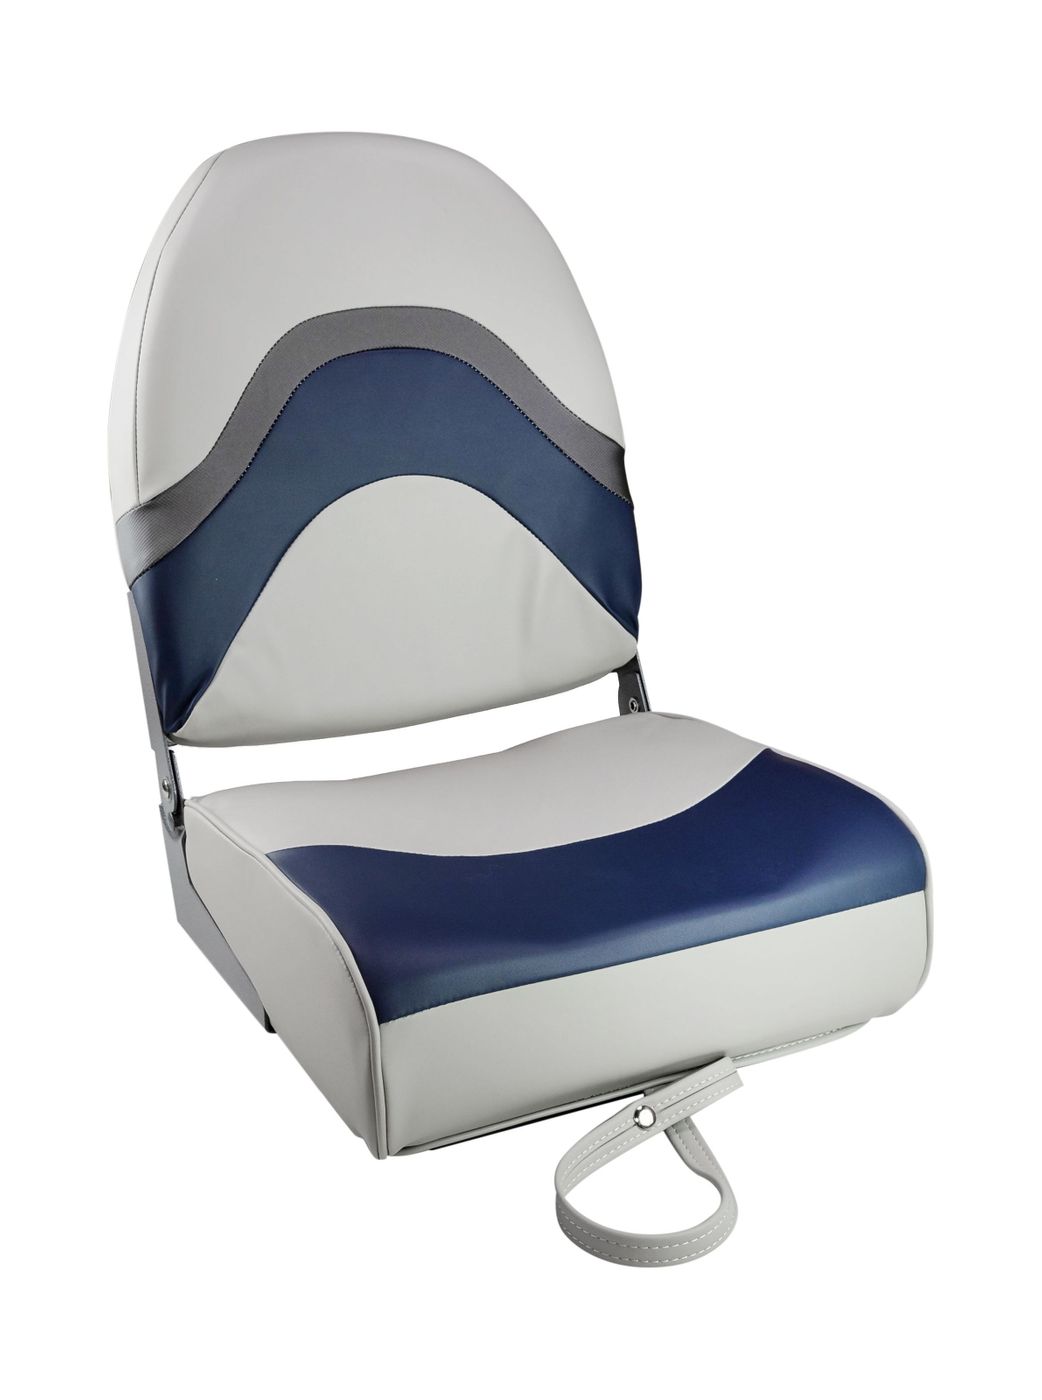 Кресло складное мягкое PREMIUM WAVE, цвет серый/синий 1062031 кресло складное мягкое premium wave серый синий 1062031